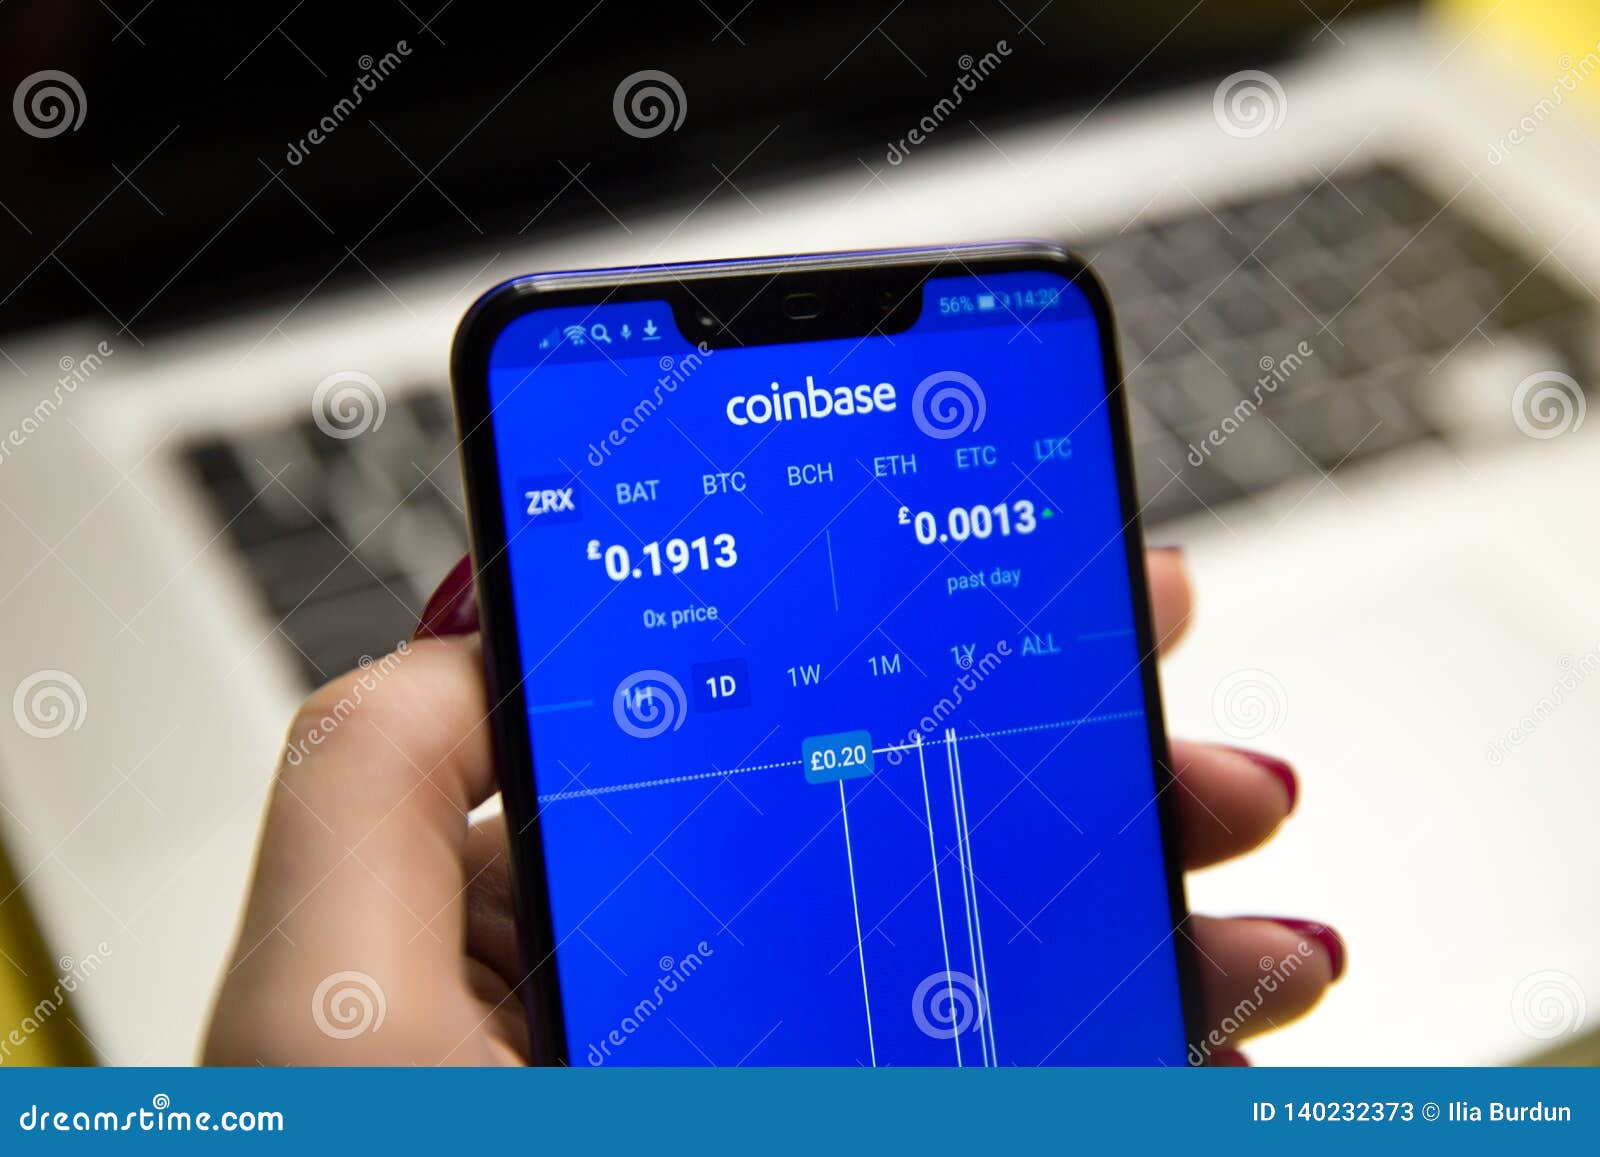 Tula, Russia - JANUARY 29, 2019: Coinbase - Buy Bitcoin ...